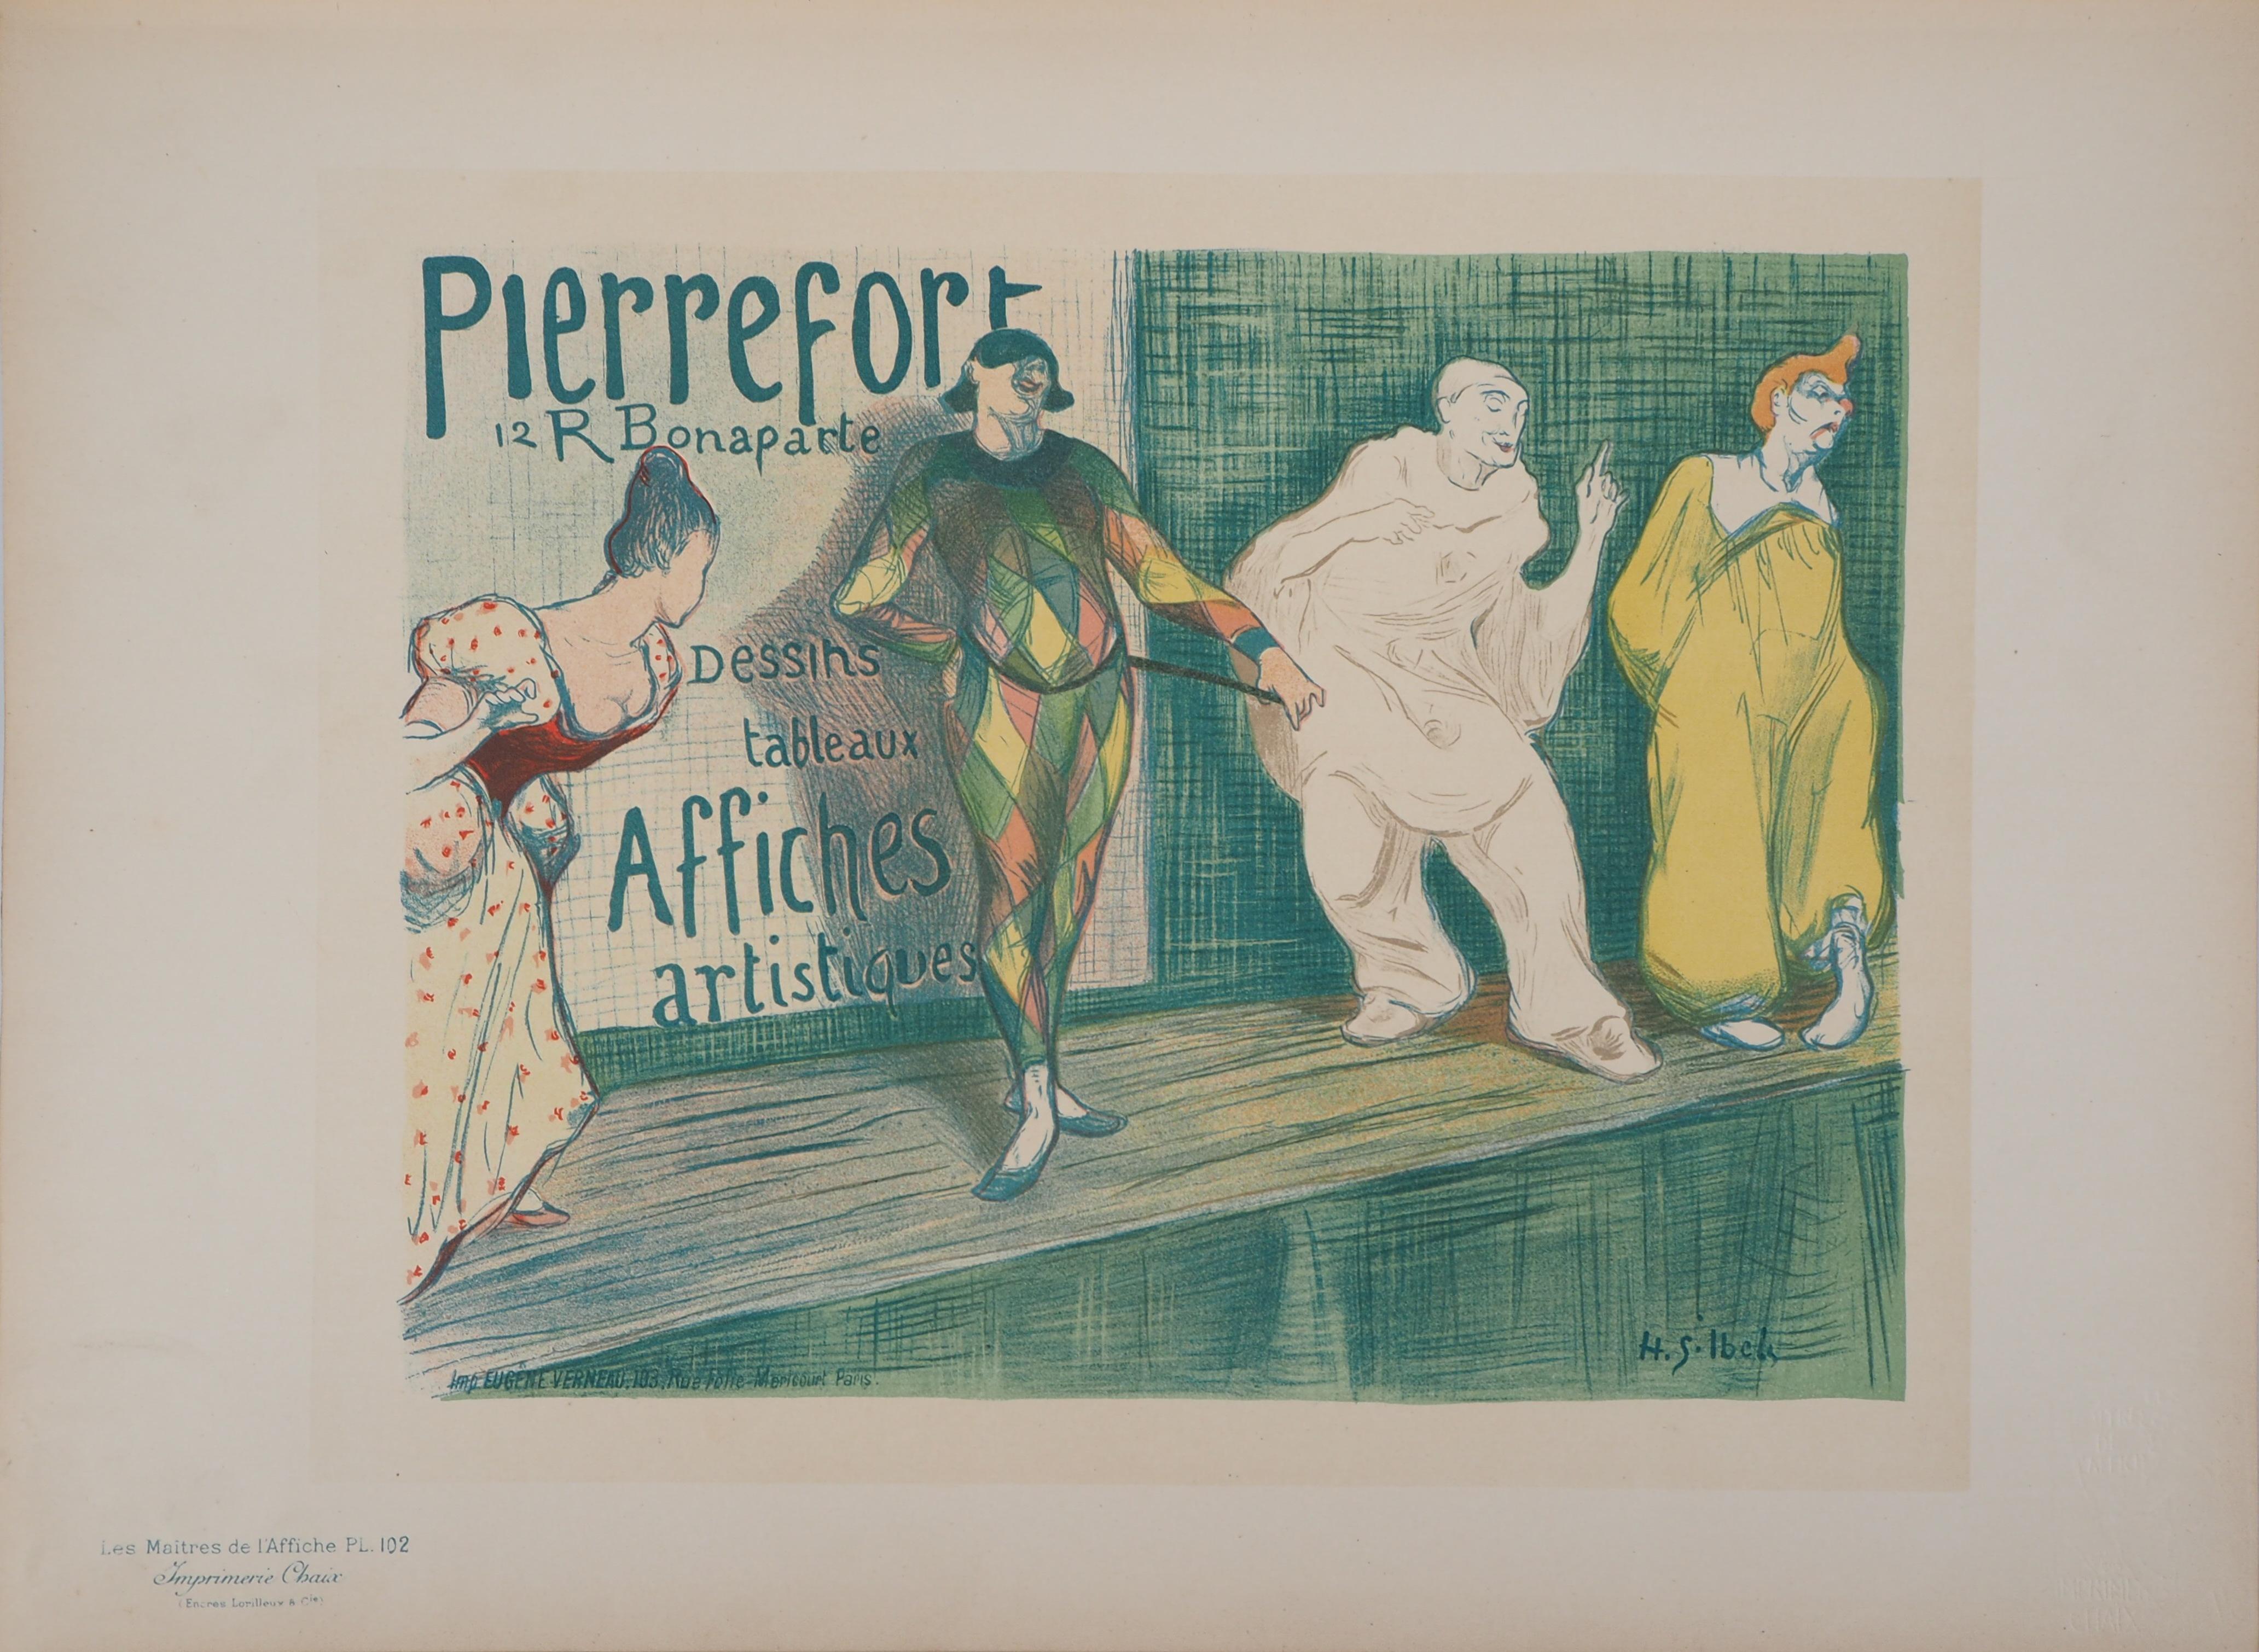 Harlequin and Pierrot - Lithograph (Les Maîtres de l'Affiche), 1897 - Art Nouveau Print by Henri Gabriel Ibels